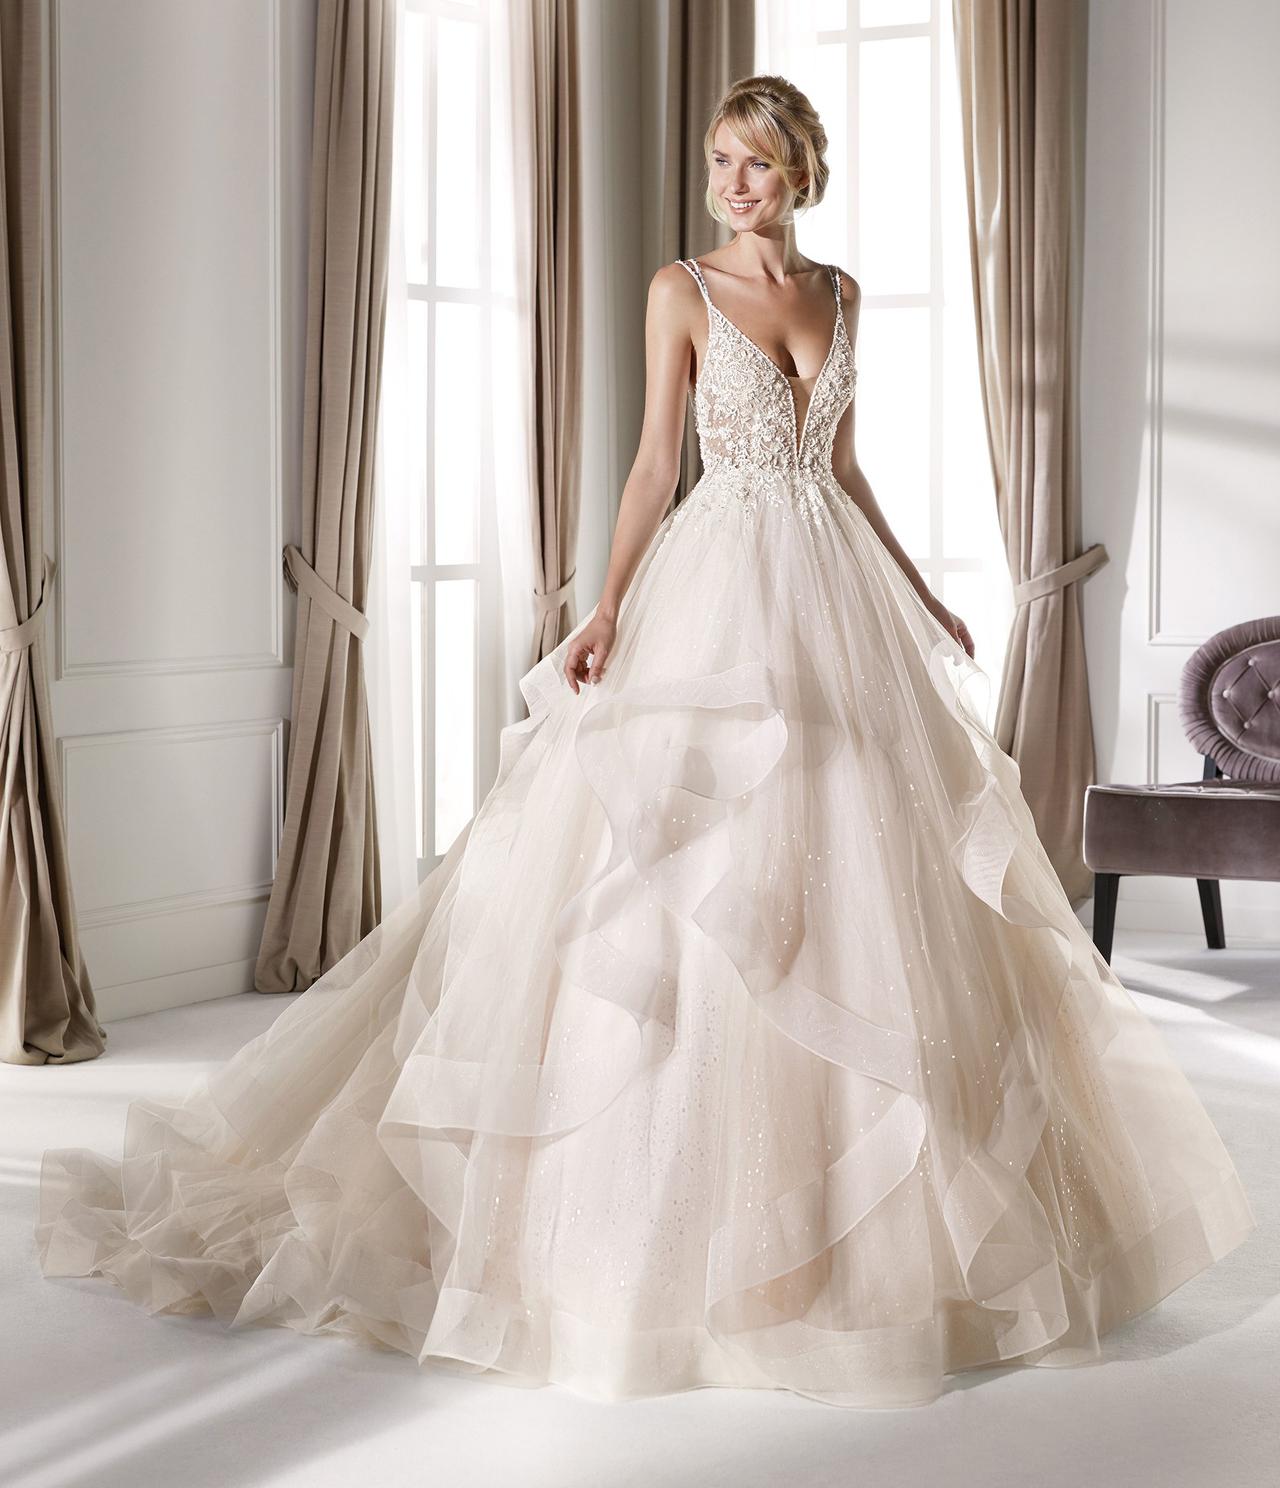 Vestidos de novia Nicole 2020: diseños italianos de ensueño 